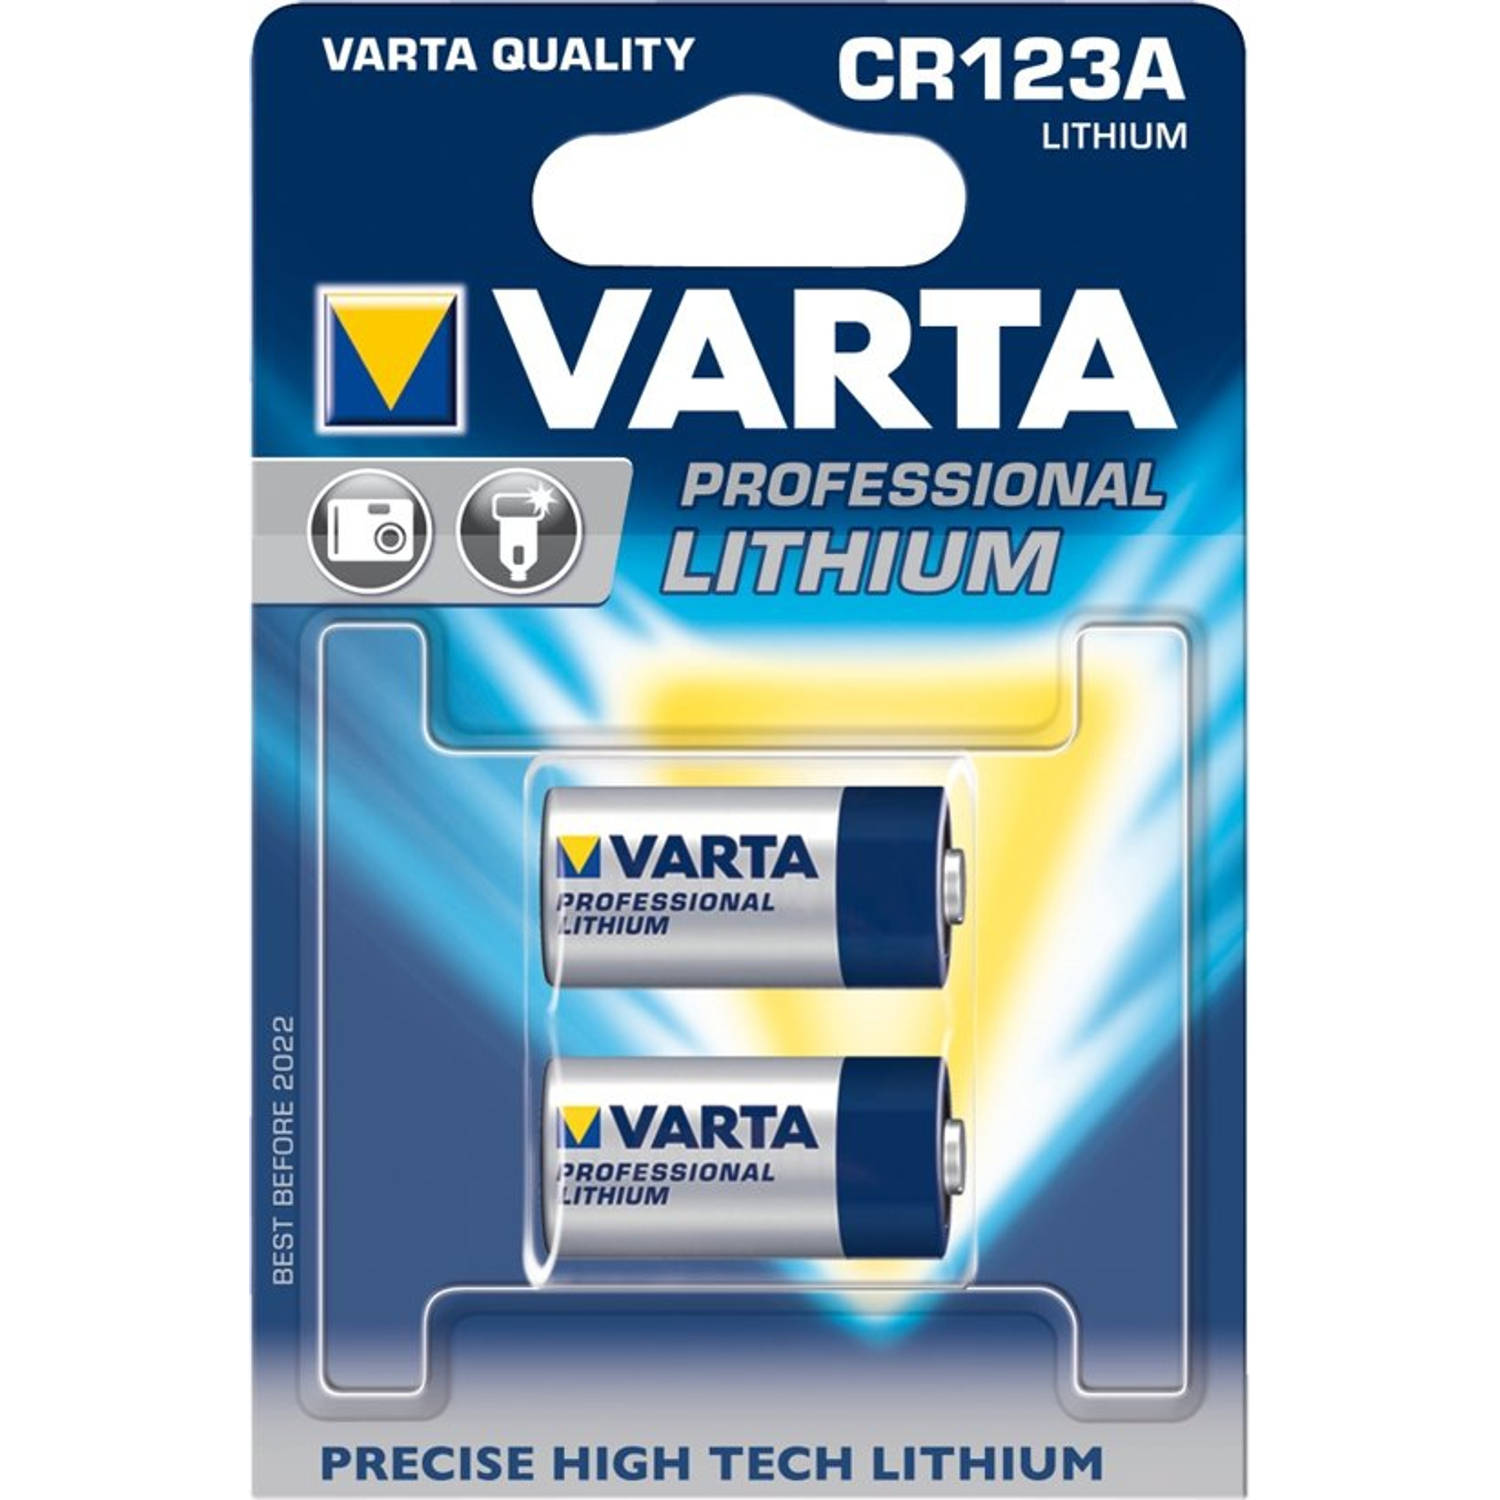 Varta CR123A Fotobatterij 3 V 1600 mAh 2 stuks